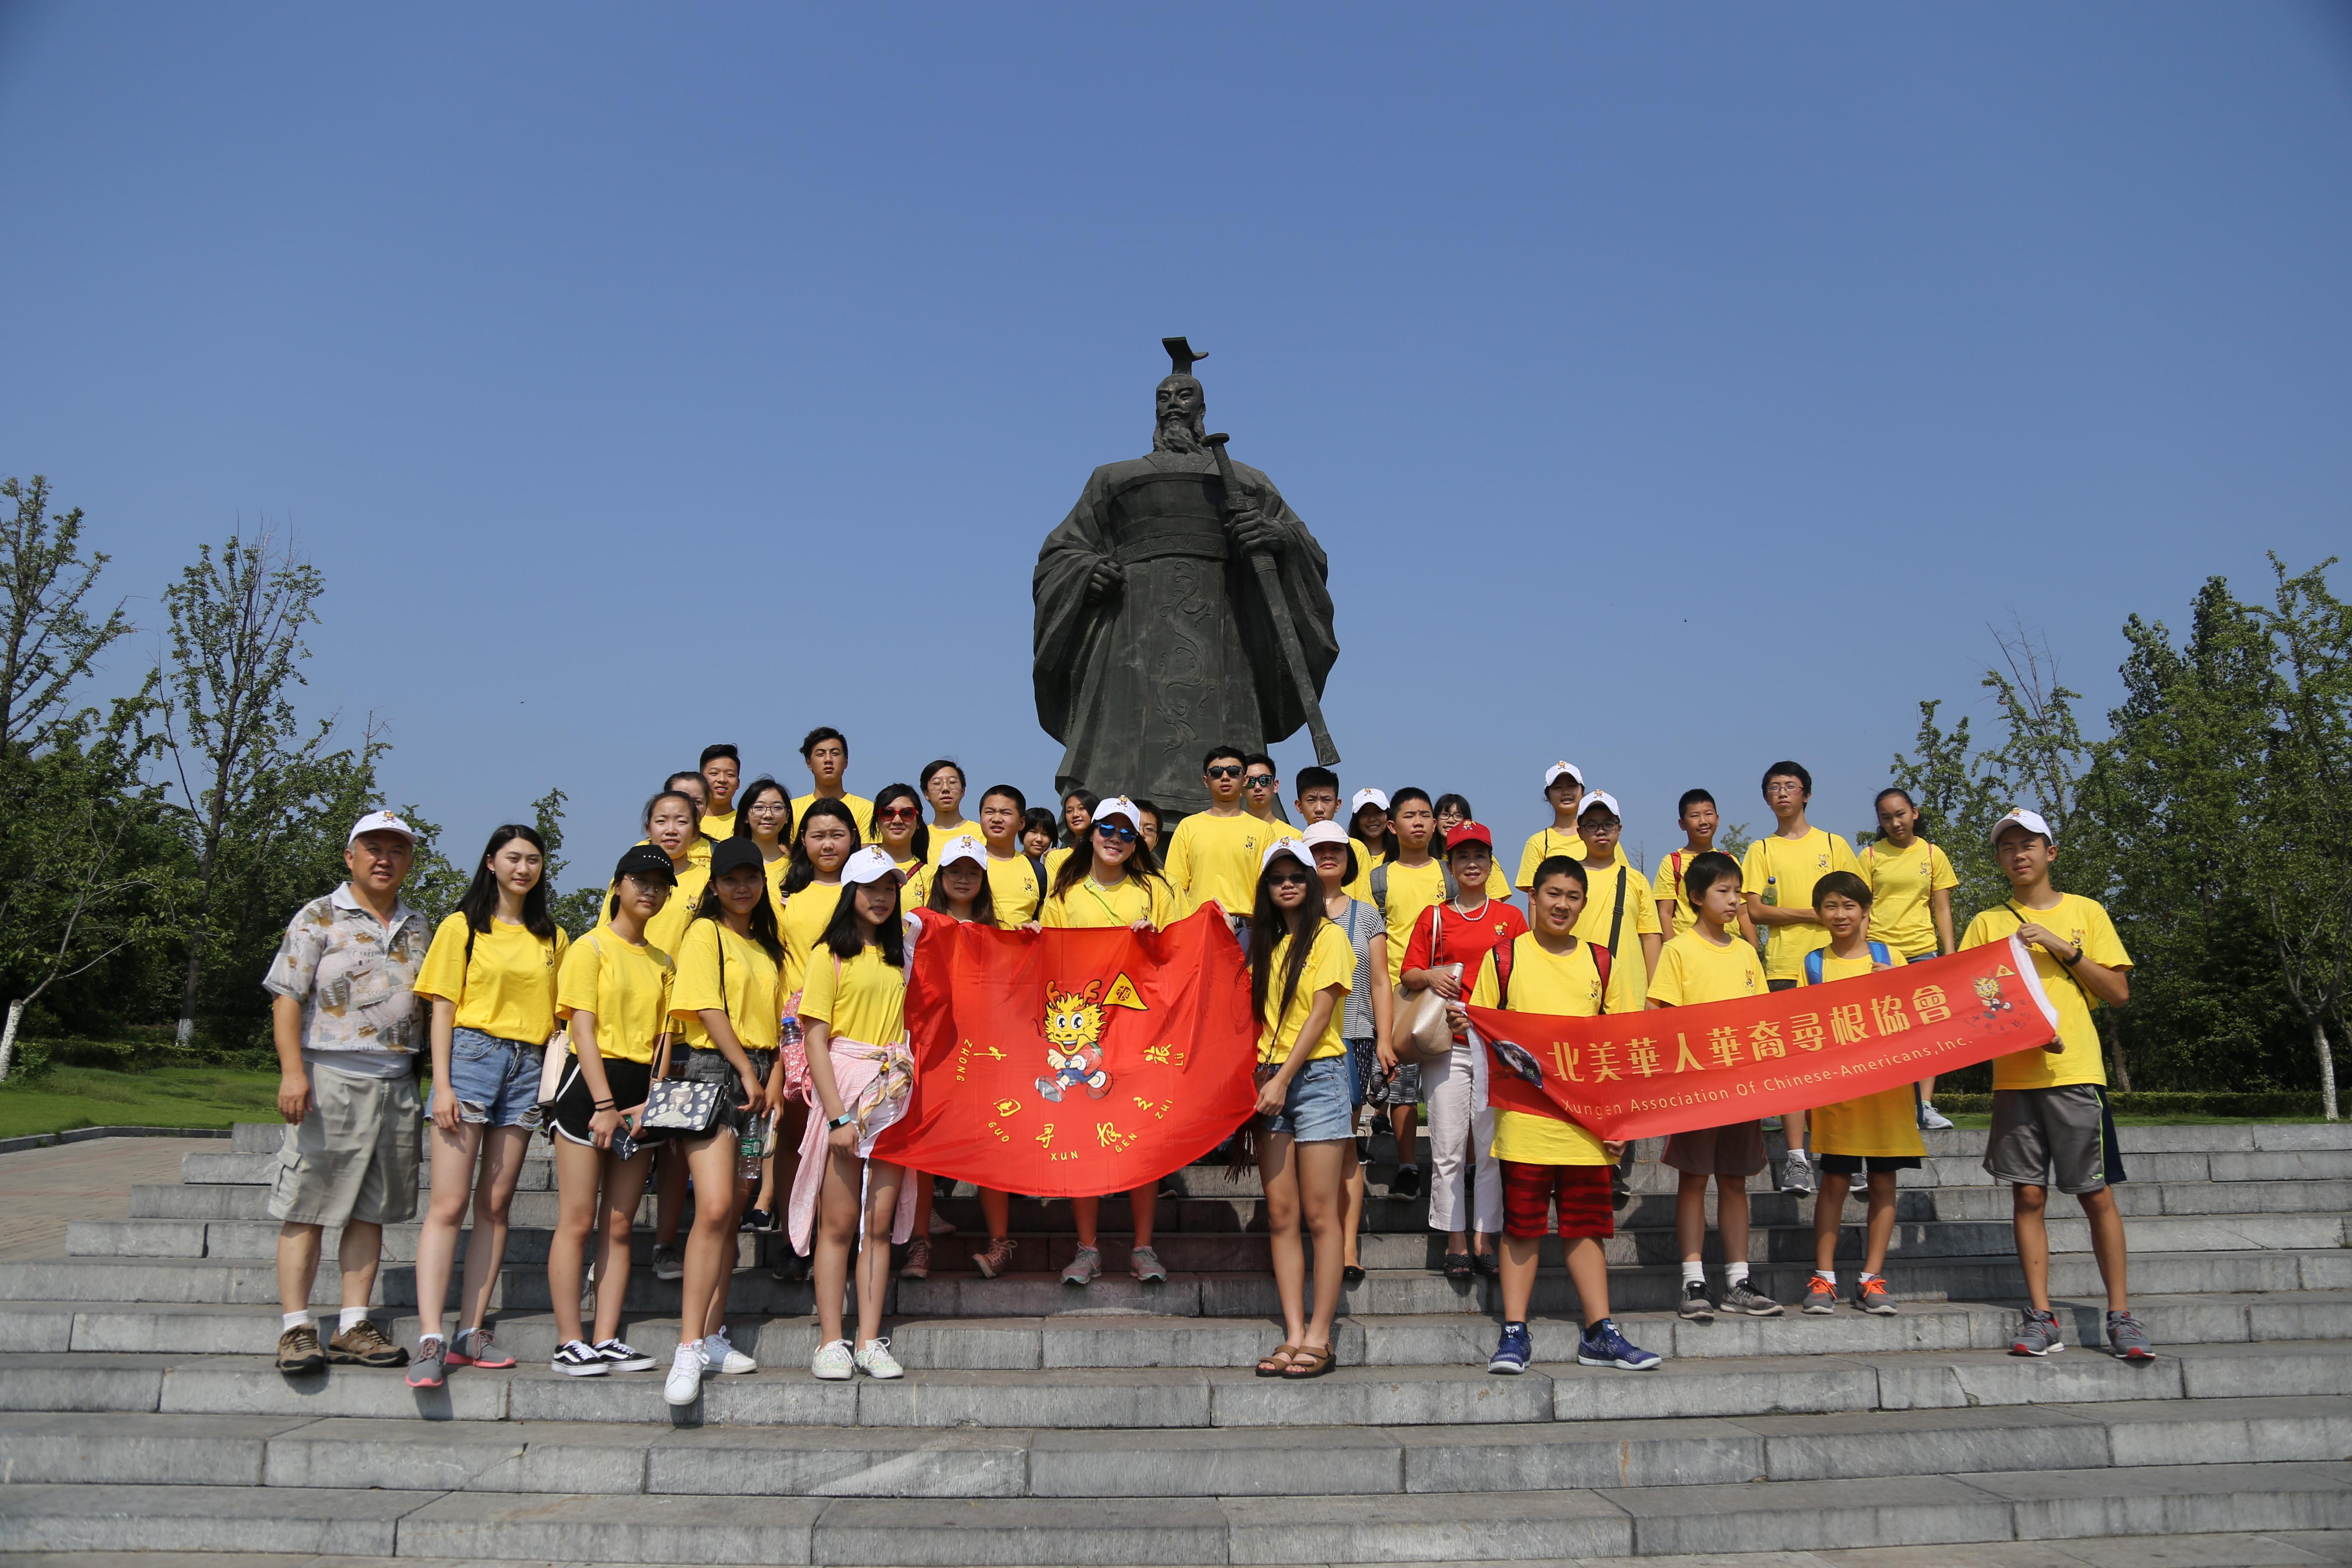 海外华裔青少年感受汉文化 中国寻根之旅 夏令营来到徐州汉文化景区 社教活动 徐州汉兵马俑博物馆